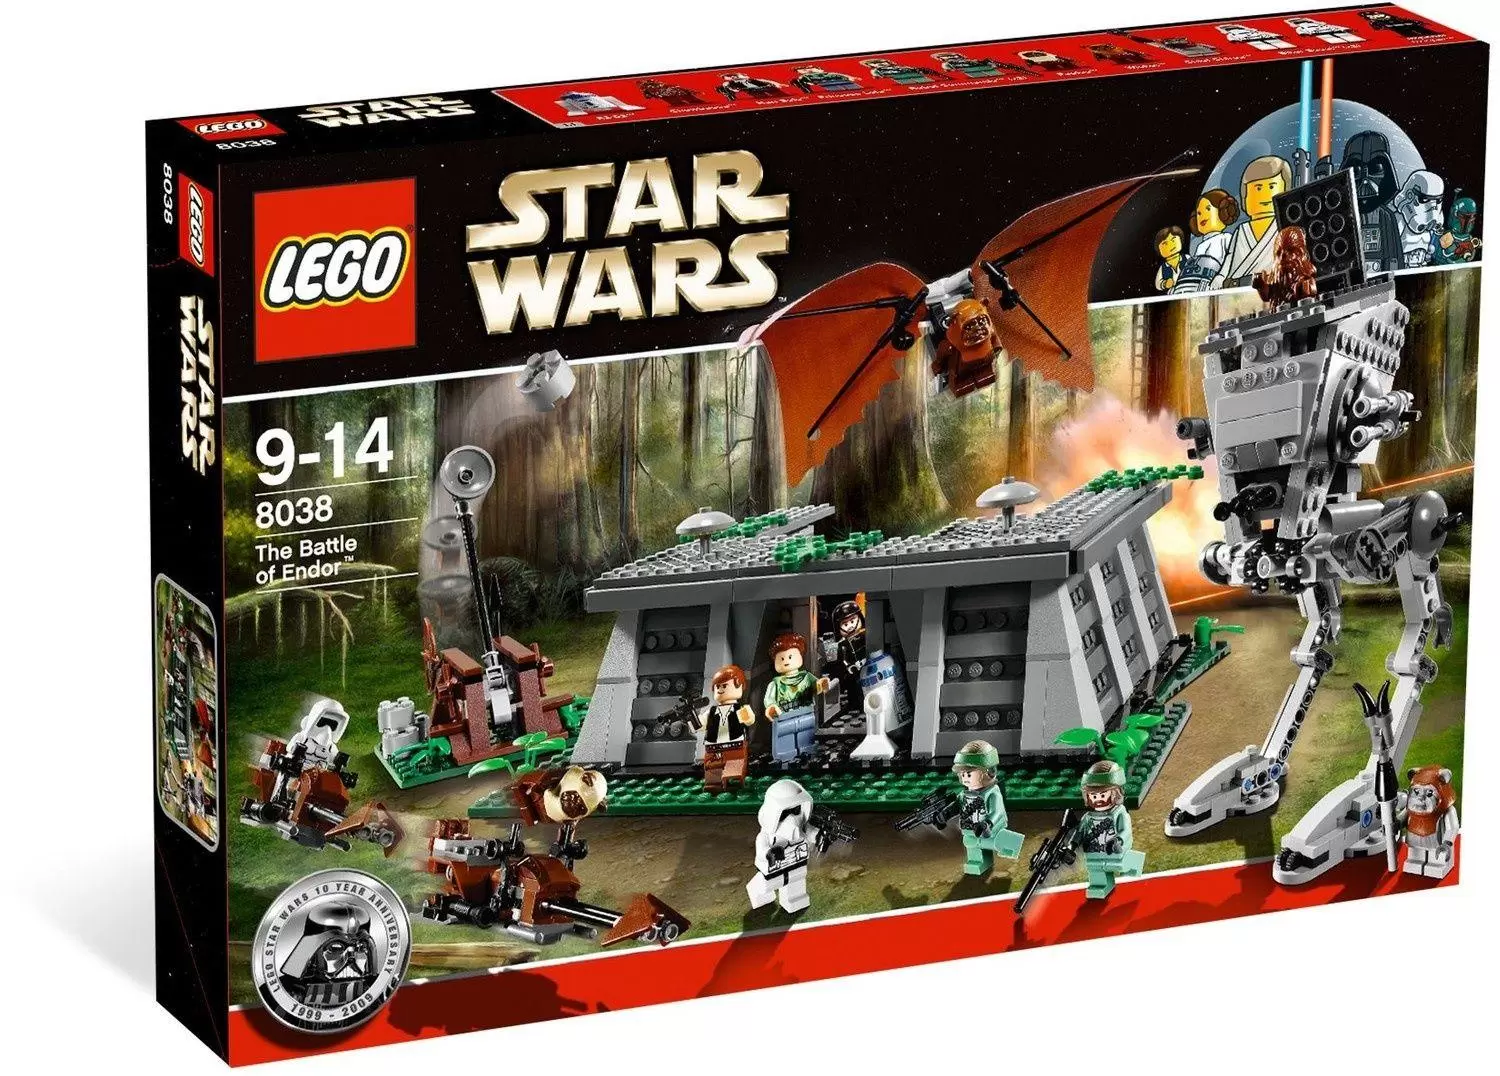 LEGO Star Wars - The Battle of Endor